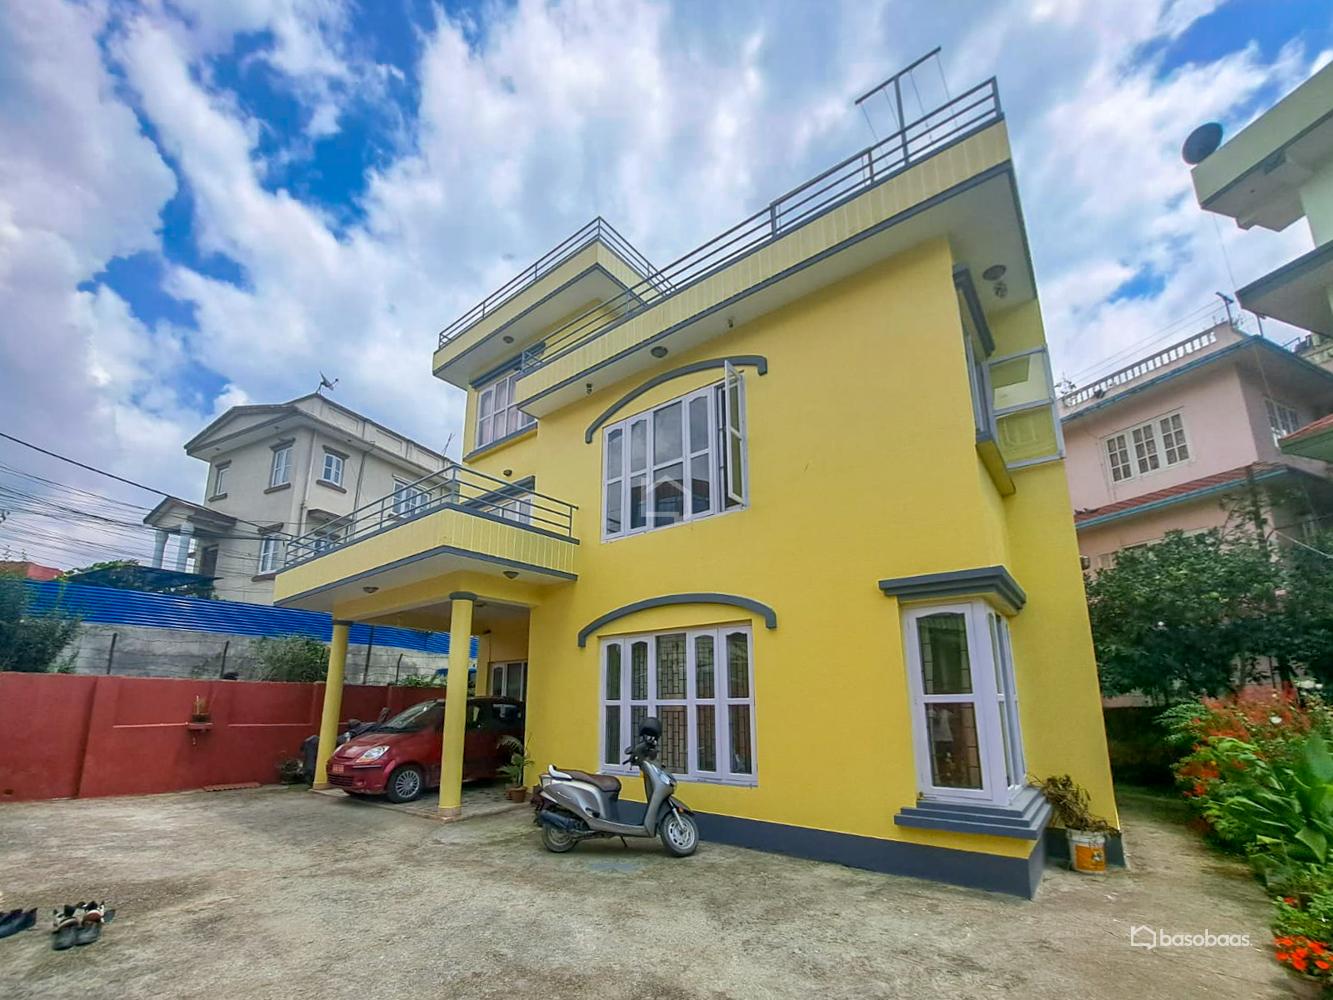 Residental : House for Sale in Nakkhu, Lalitpur Thumbnail